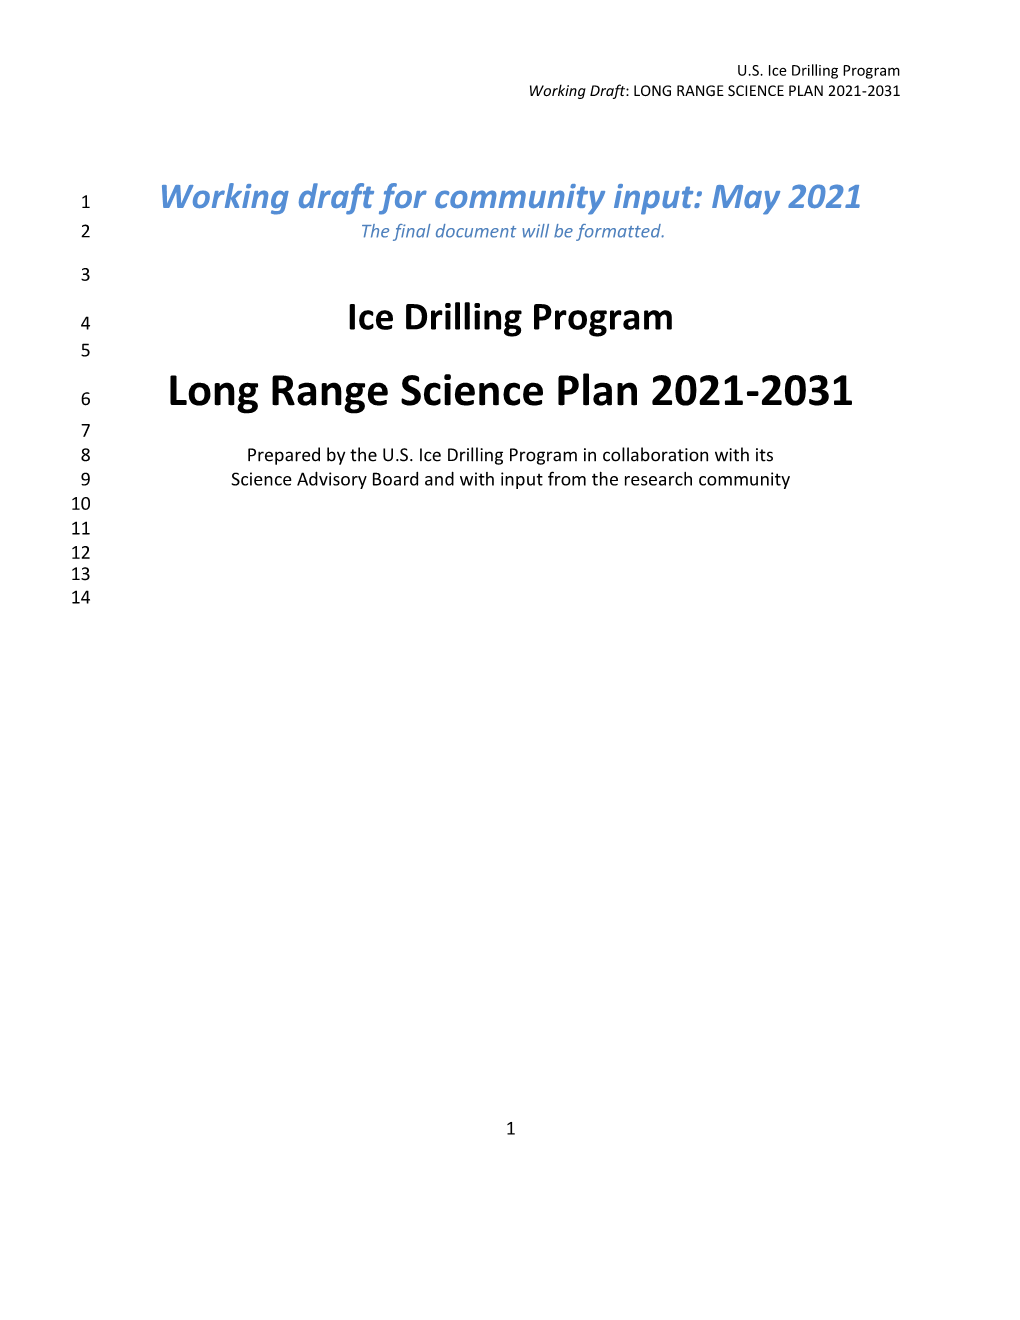 Long Range Science Plan 2021-2031